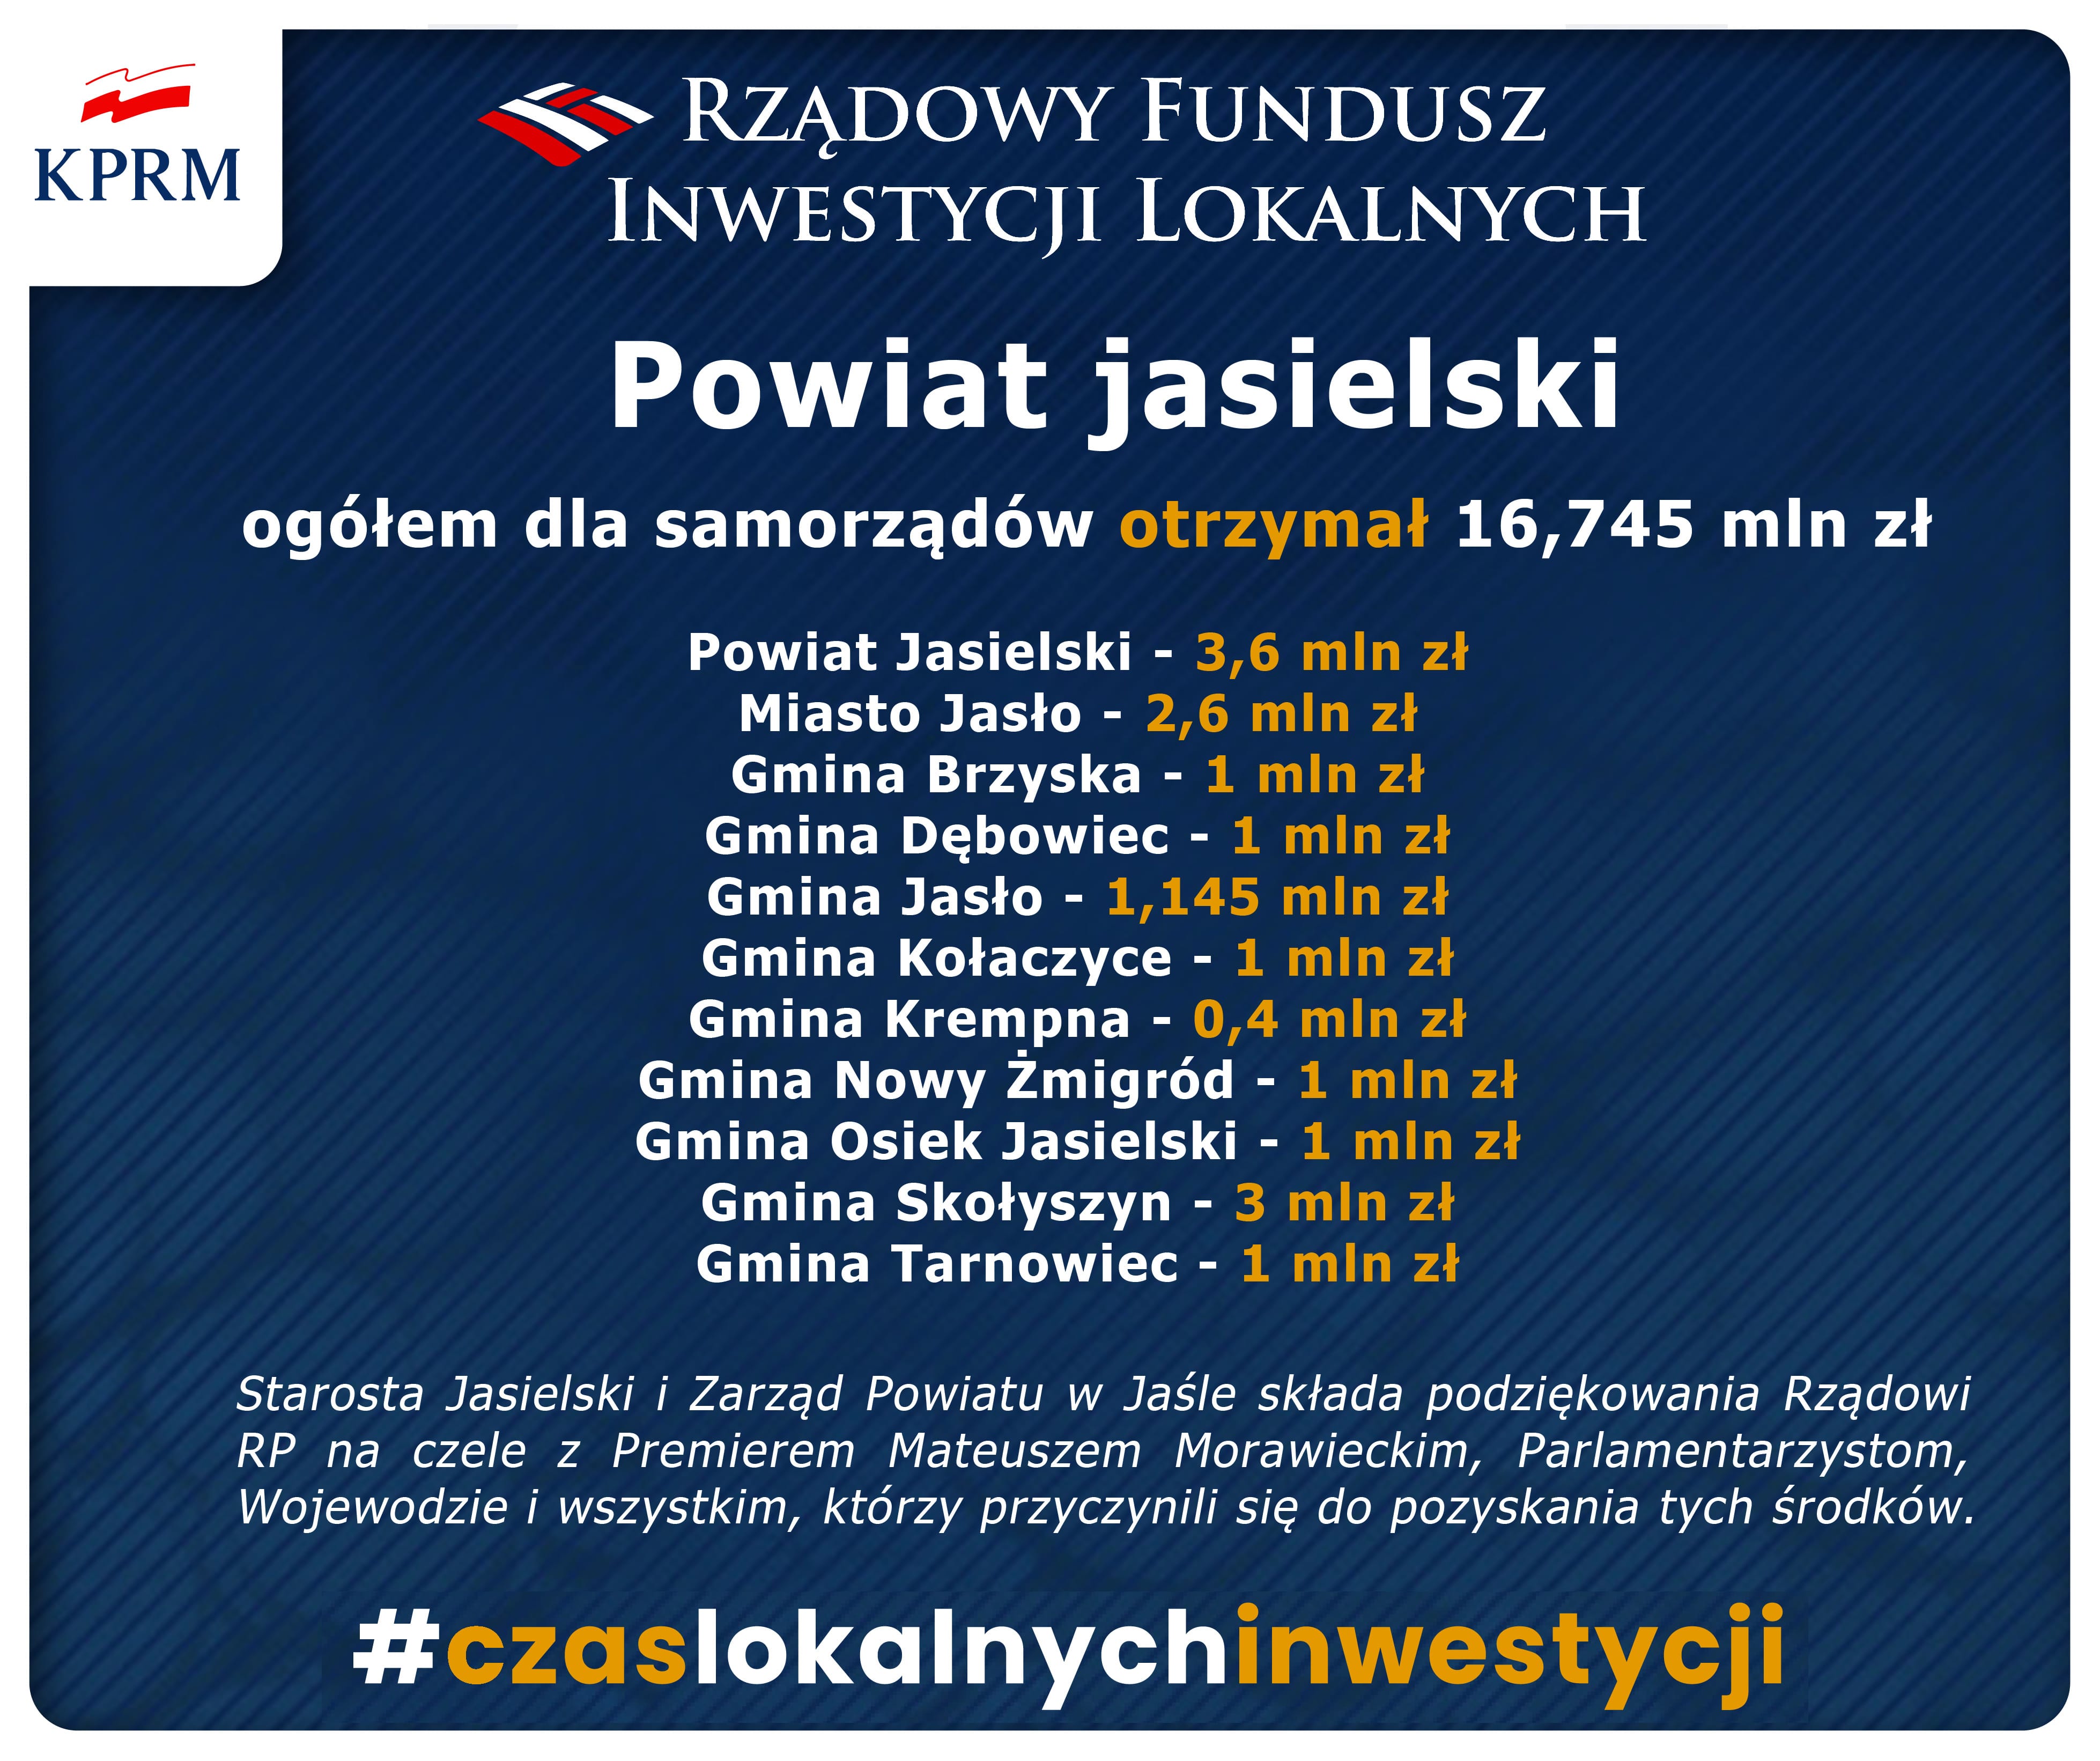 Niemal 17 mln złotych dla samorządów powiatu jasielskiego z Rządowego Funduszu Inwestycji Lokalnych.